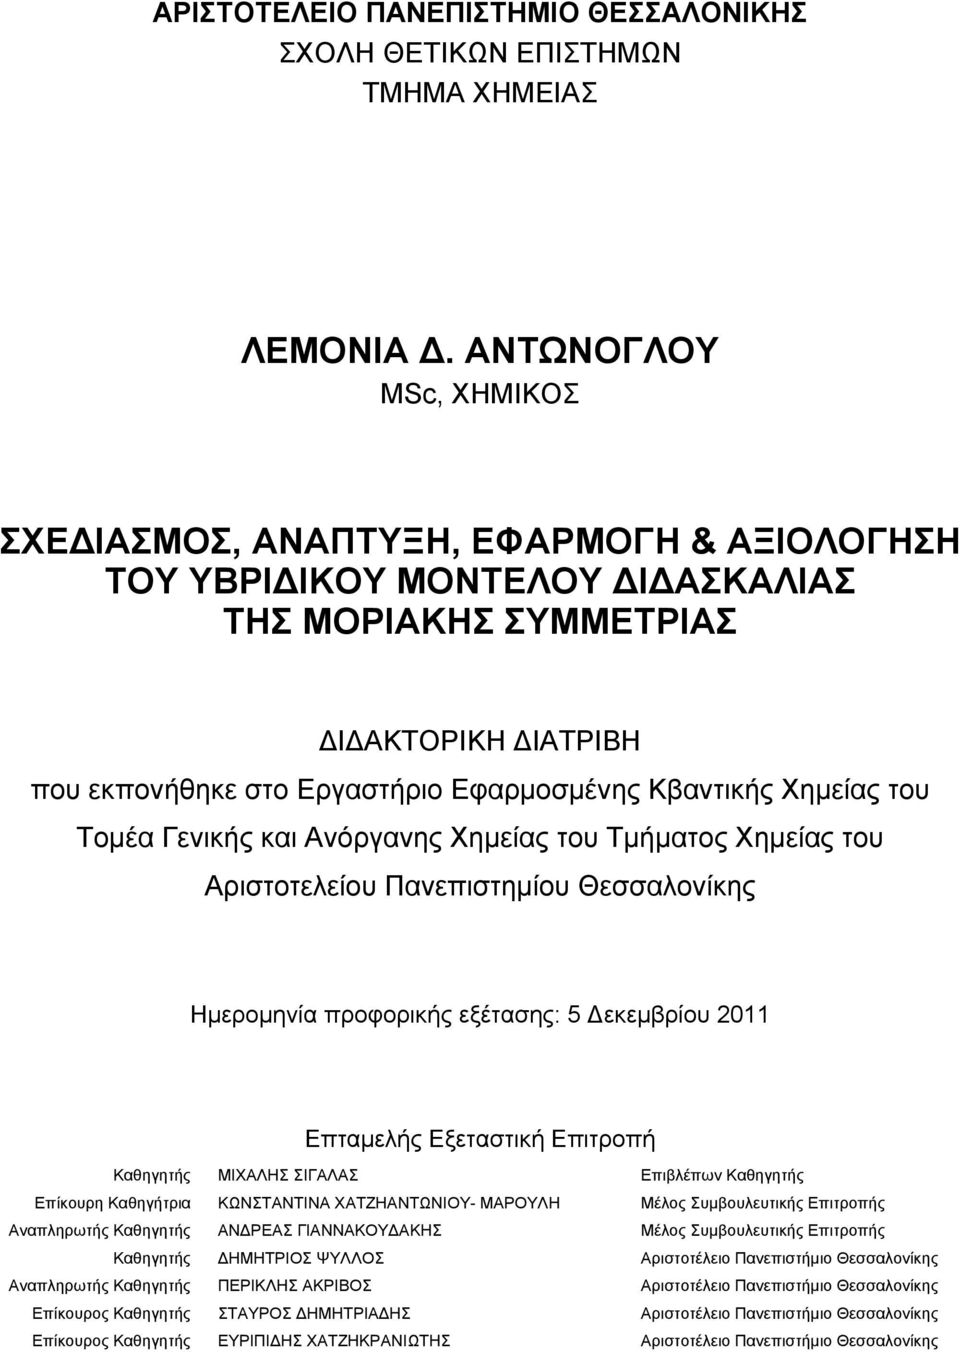 Χημείας του Τομέα Γενικής και Ανόργανης Χημείας του Τμήματος Χημείας του Αριστοτελείου Πανεπιστημίου Θεσσαλονίκης Ημερομηνία προφορικής εξέτασης: 5 εκεμβρίου 2011 Επταμελής Εξεταστική Επιτροπή